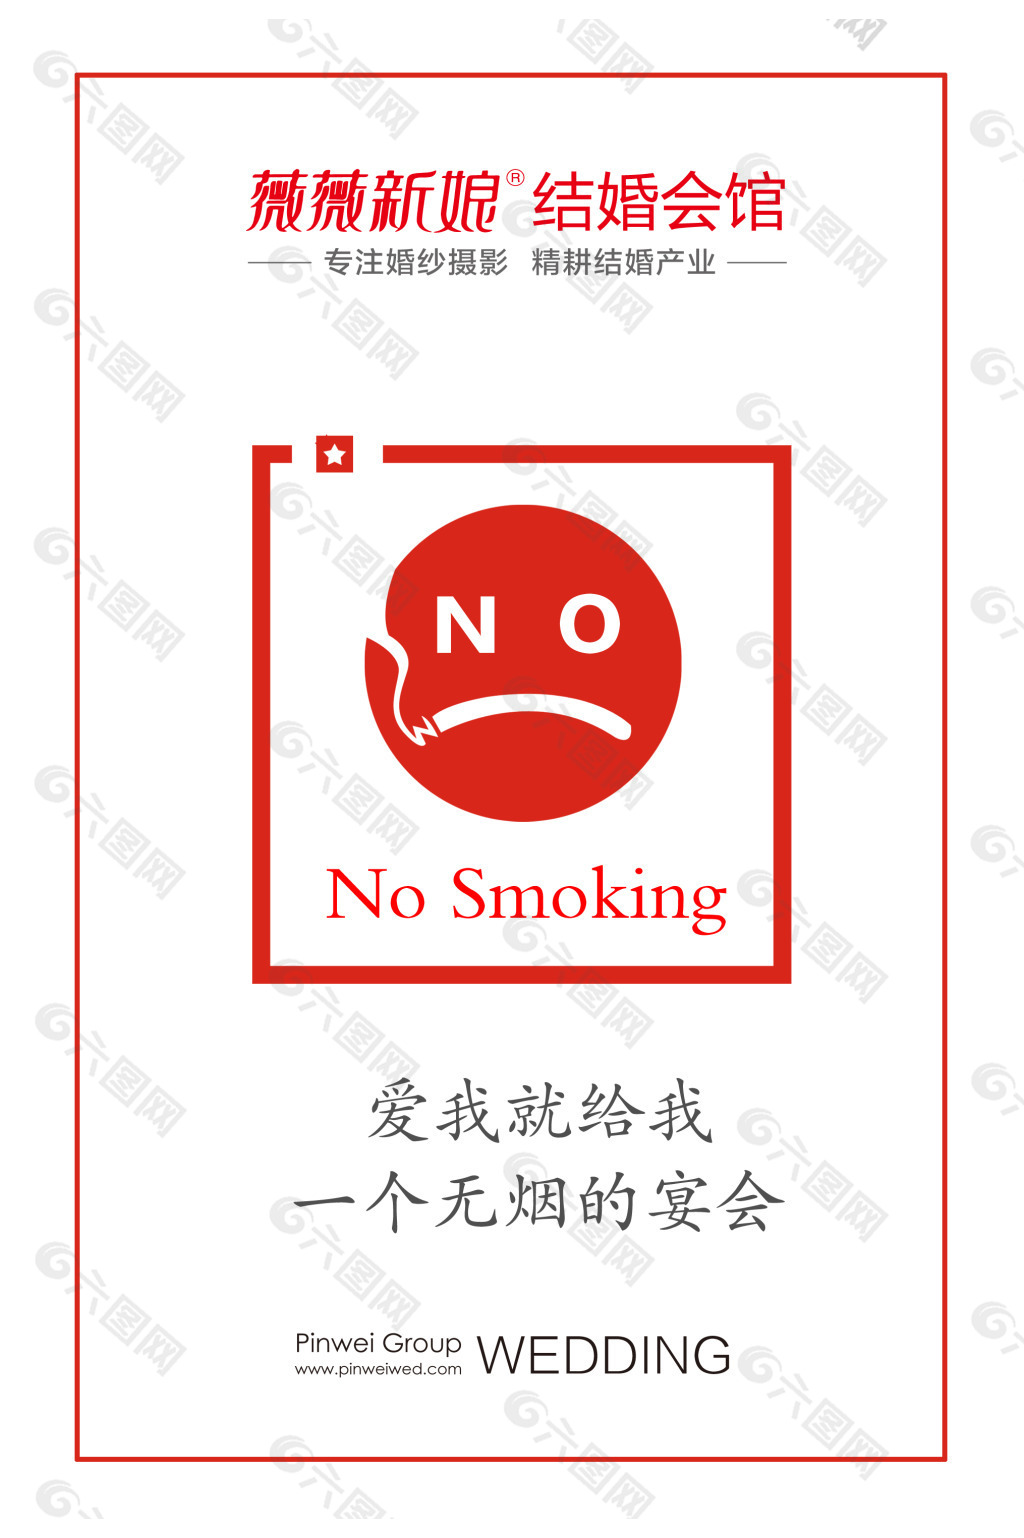 禁止吸烟平面广告素材免费下载(图片编号:4935834)